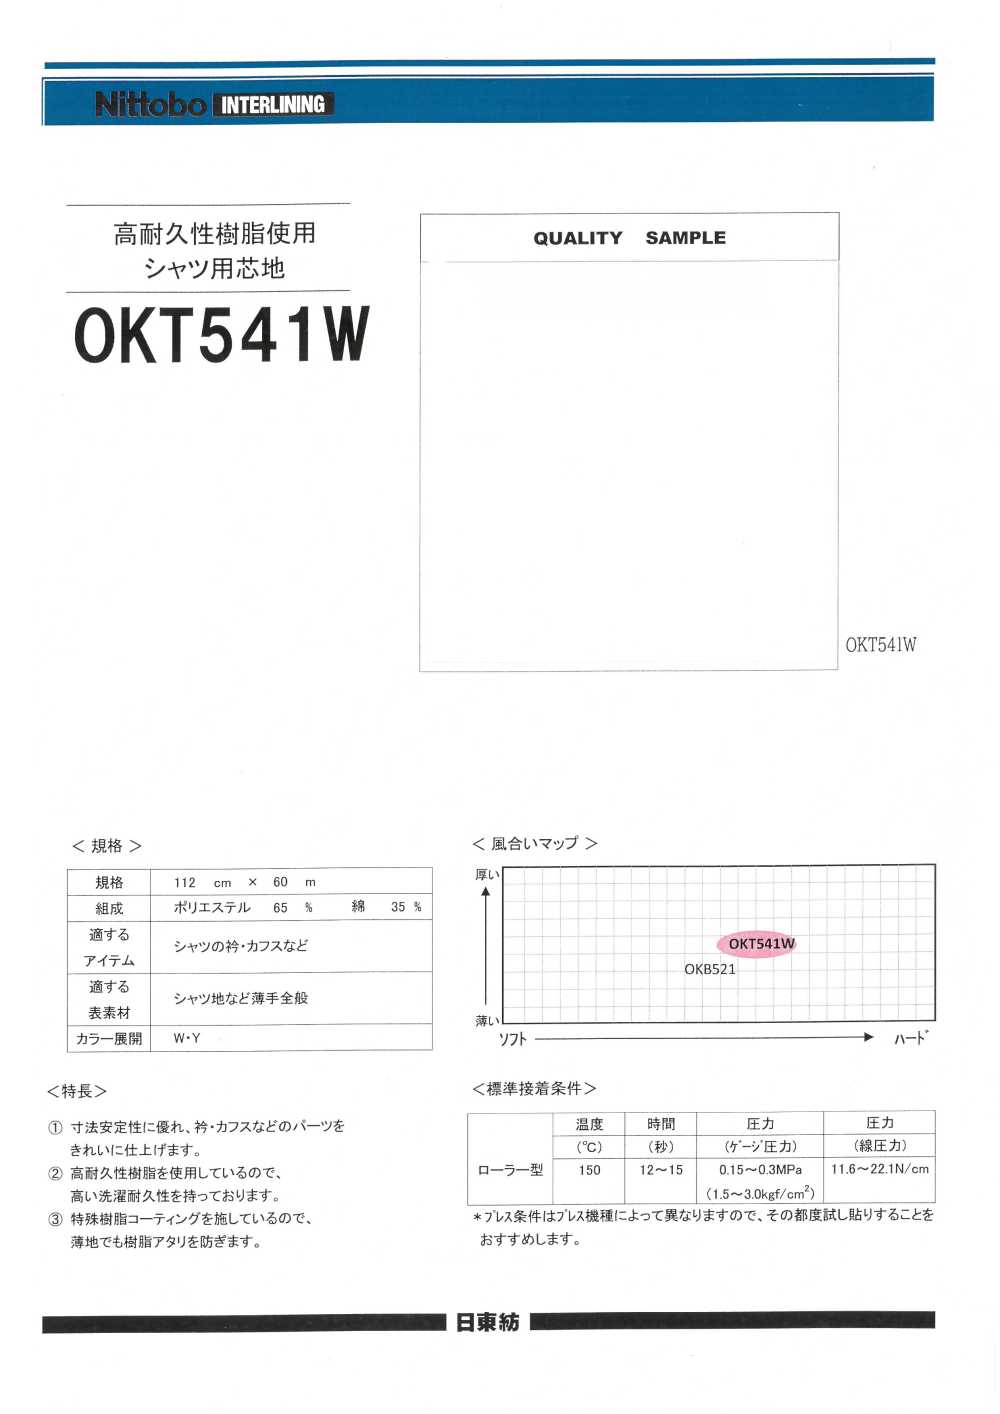 OKT541W 高耐久性樹脂使用 シャツ用 芯地 日東紡インターライニング